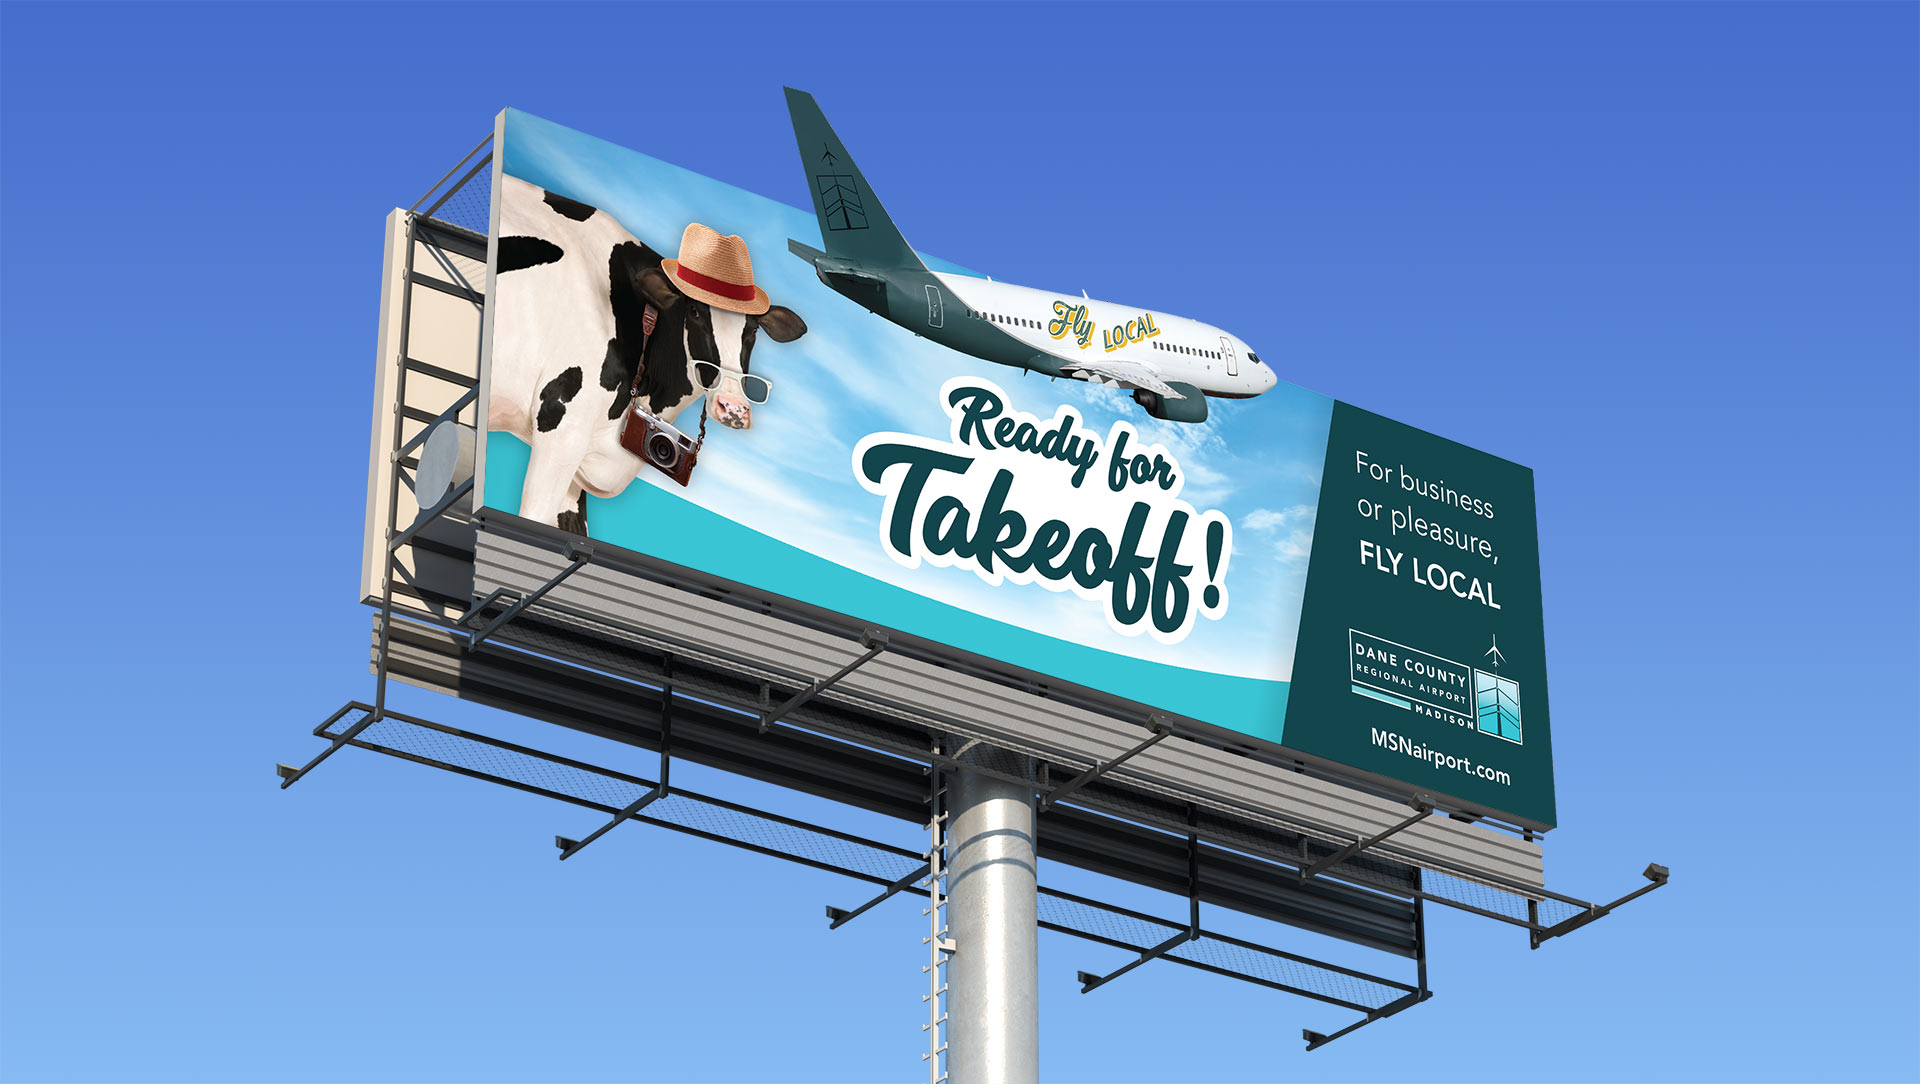 dcra-ready-for-takeoff-billboard